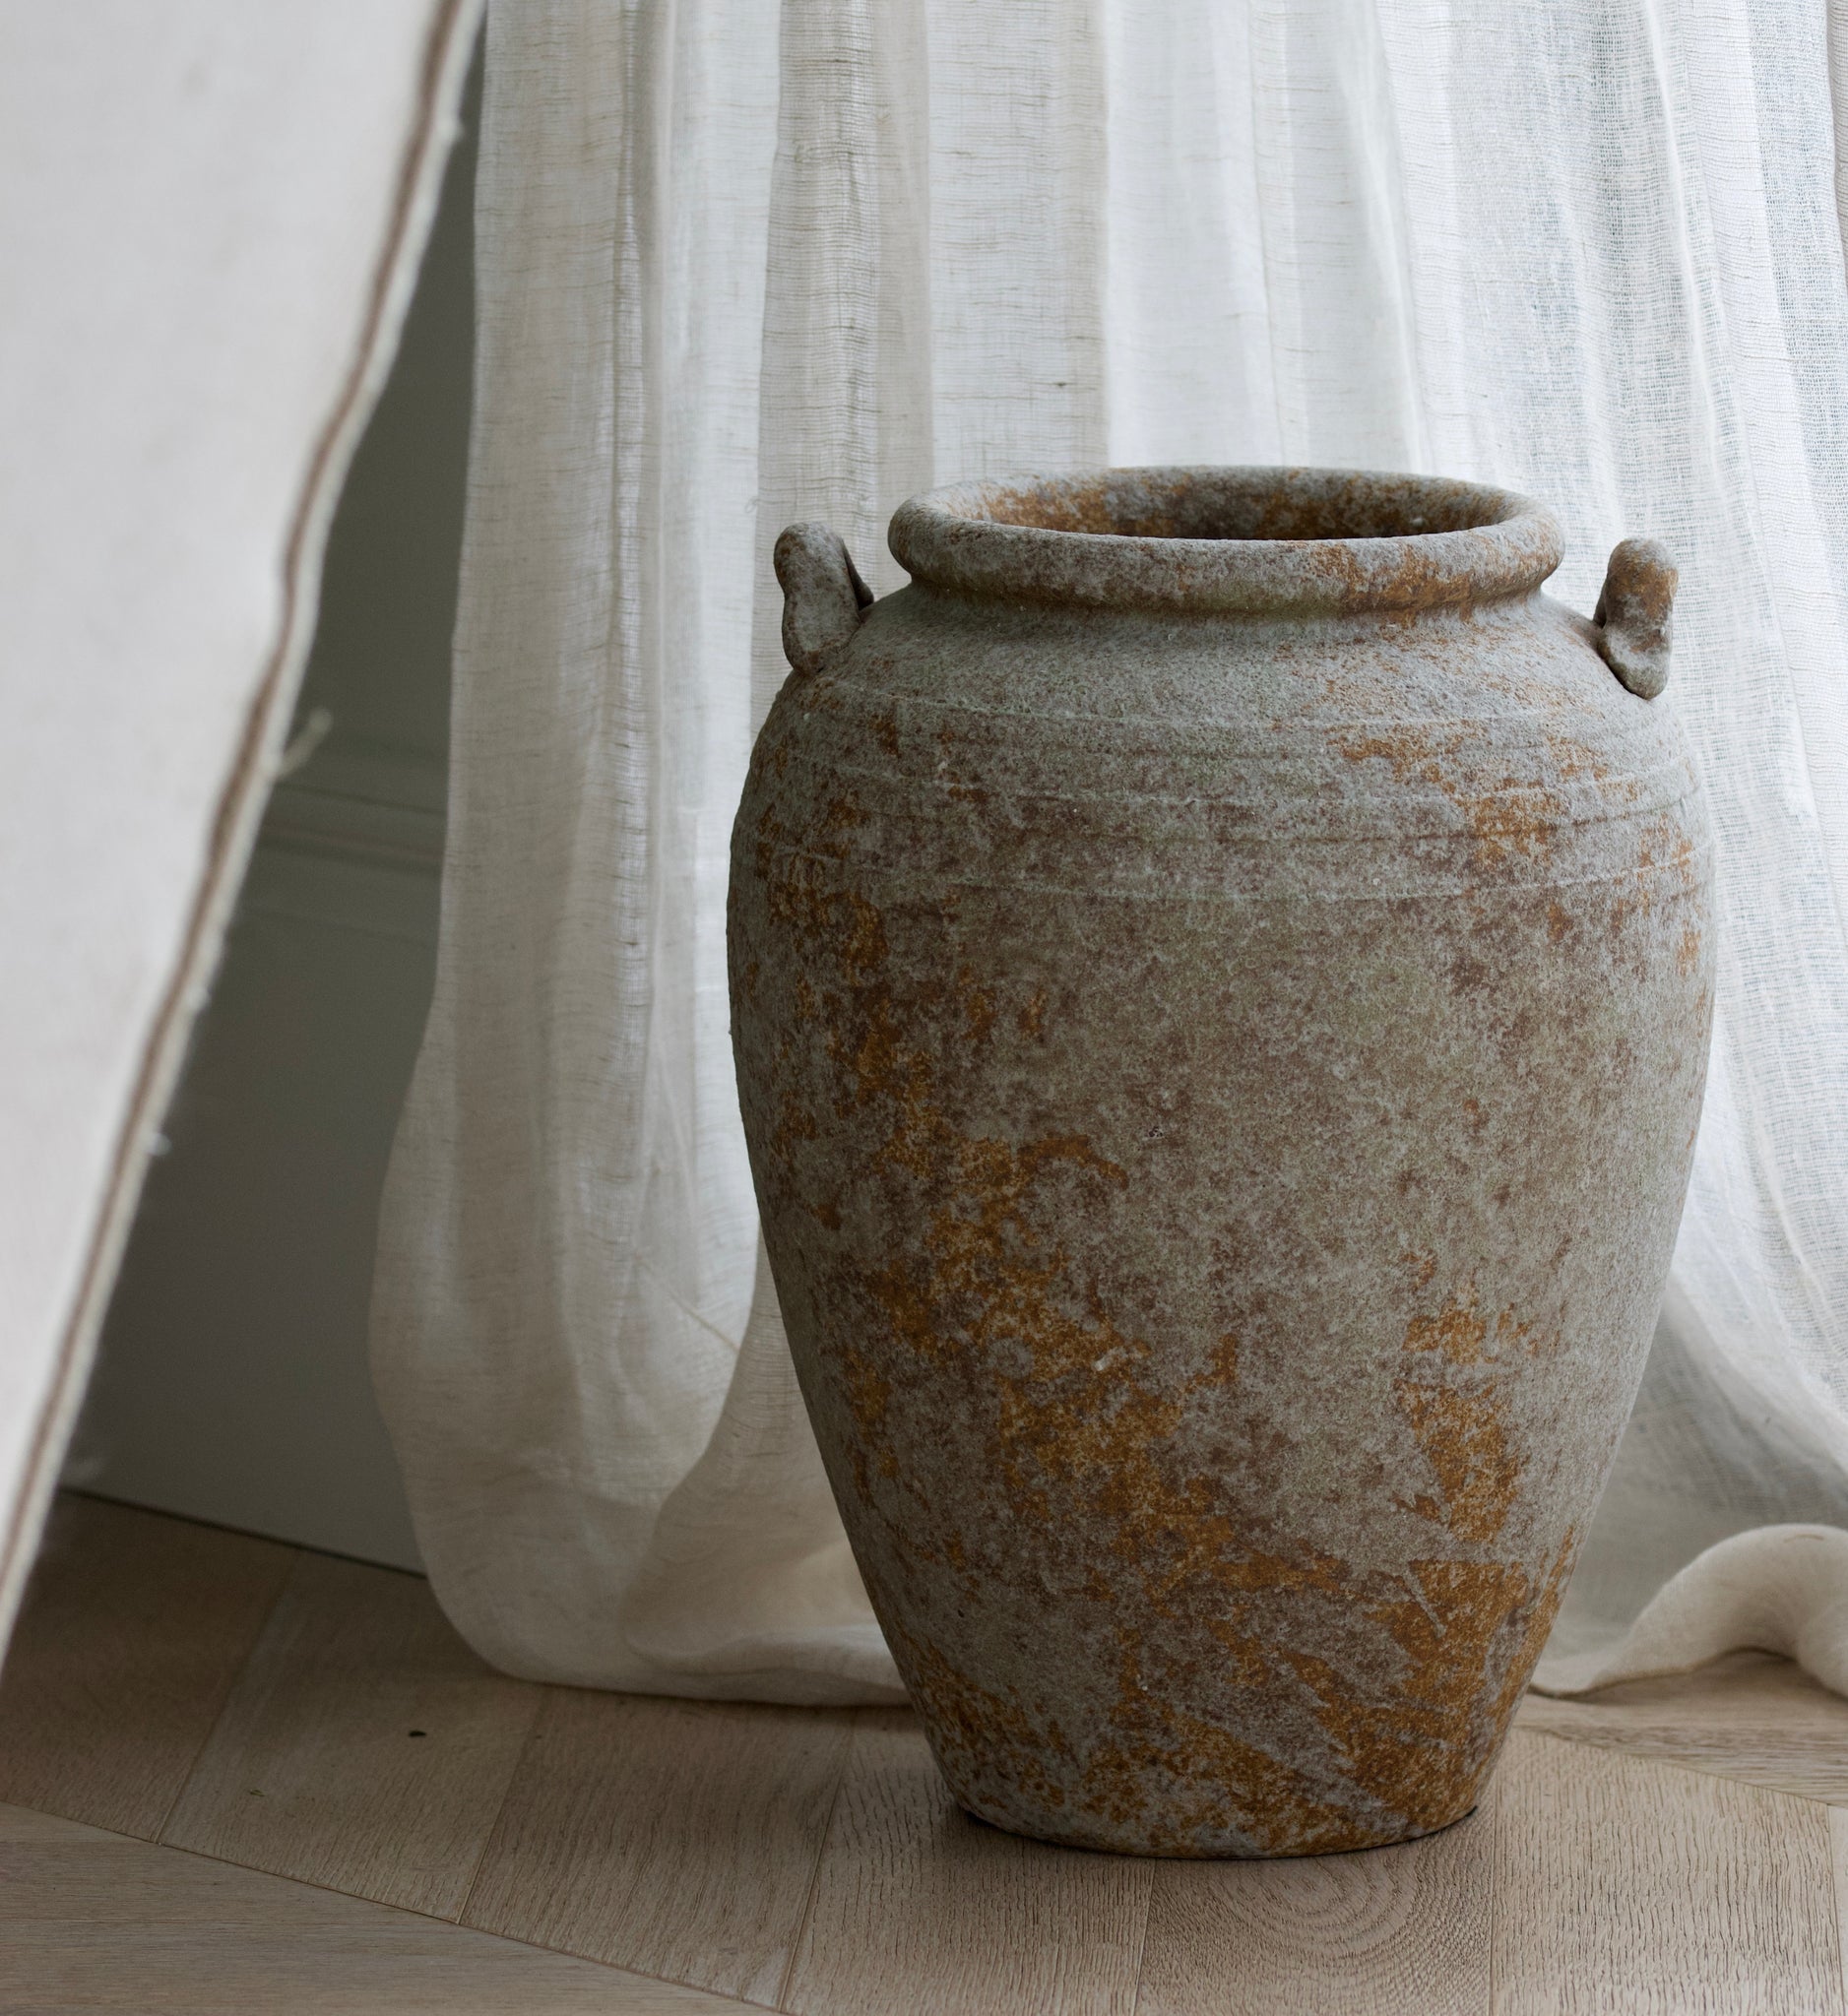 Aged Porcelain Vase